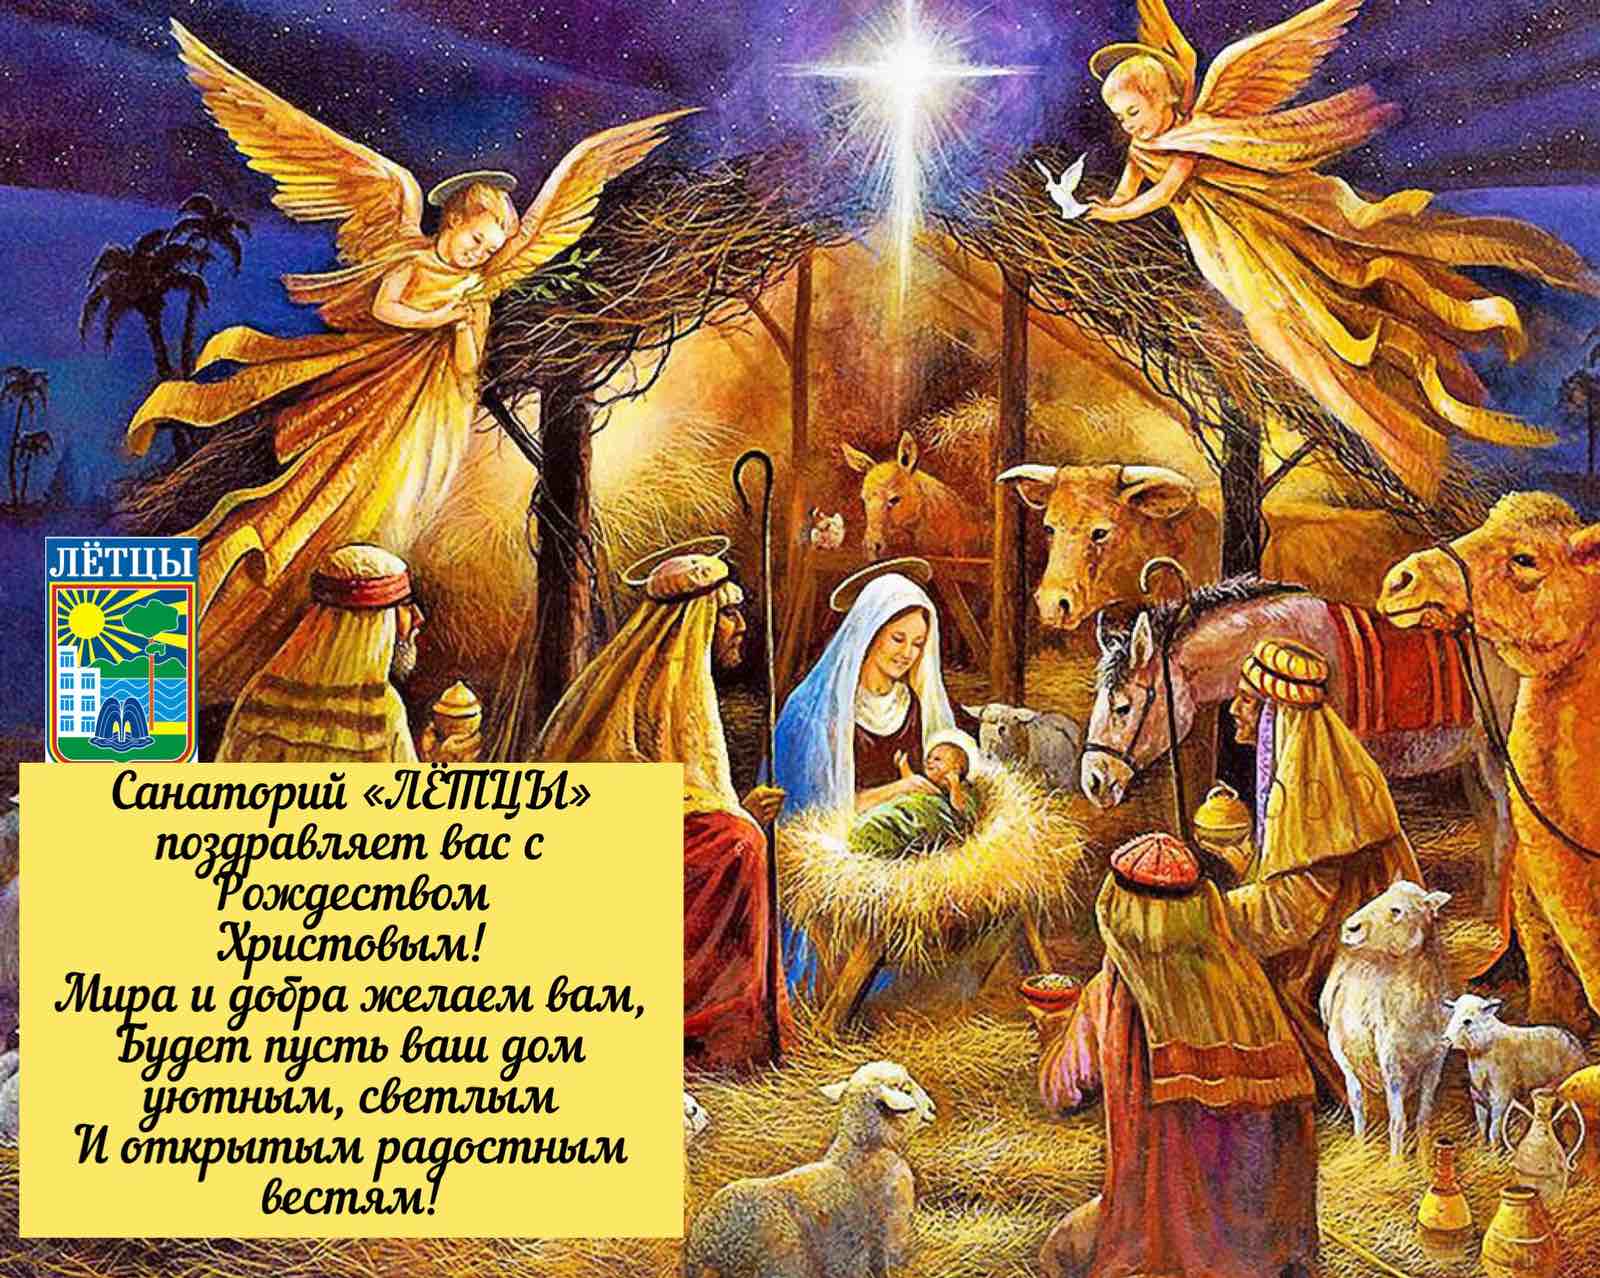 Санаторий "ЛЁТЦЫ" поздравляет с Рождеством Христовым